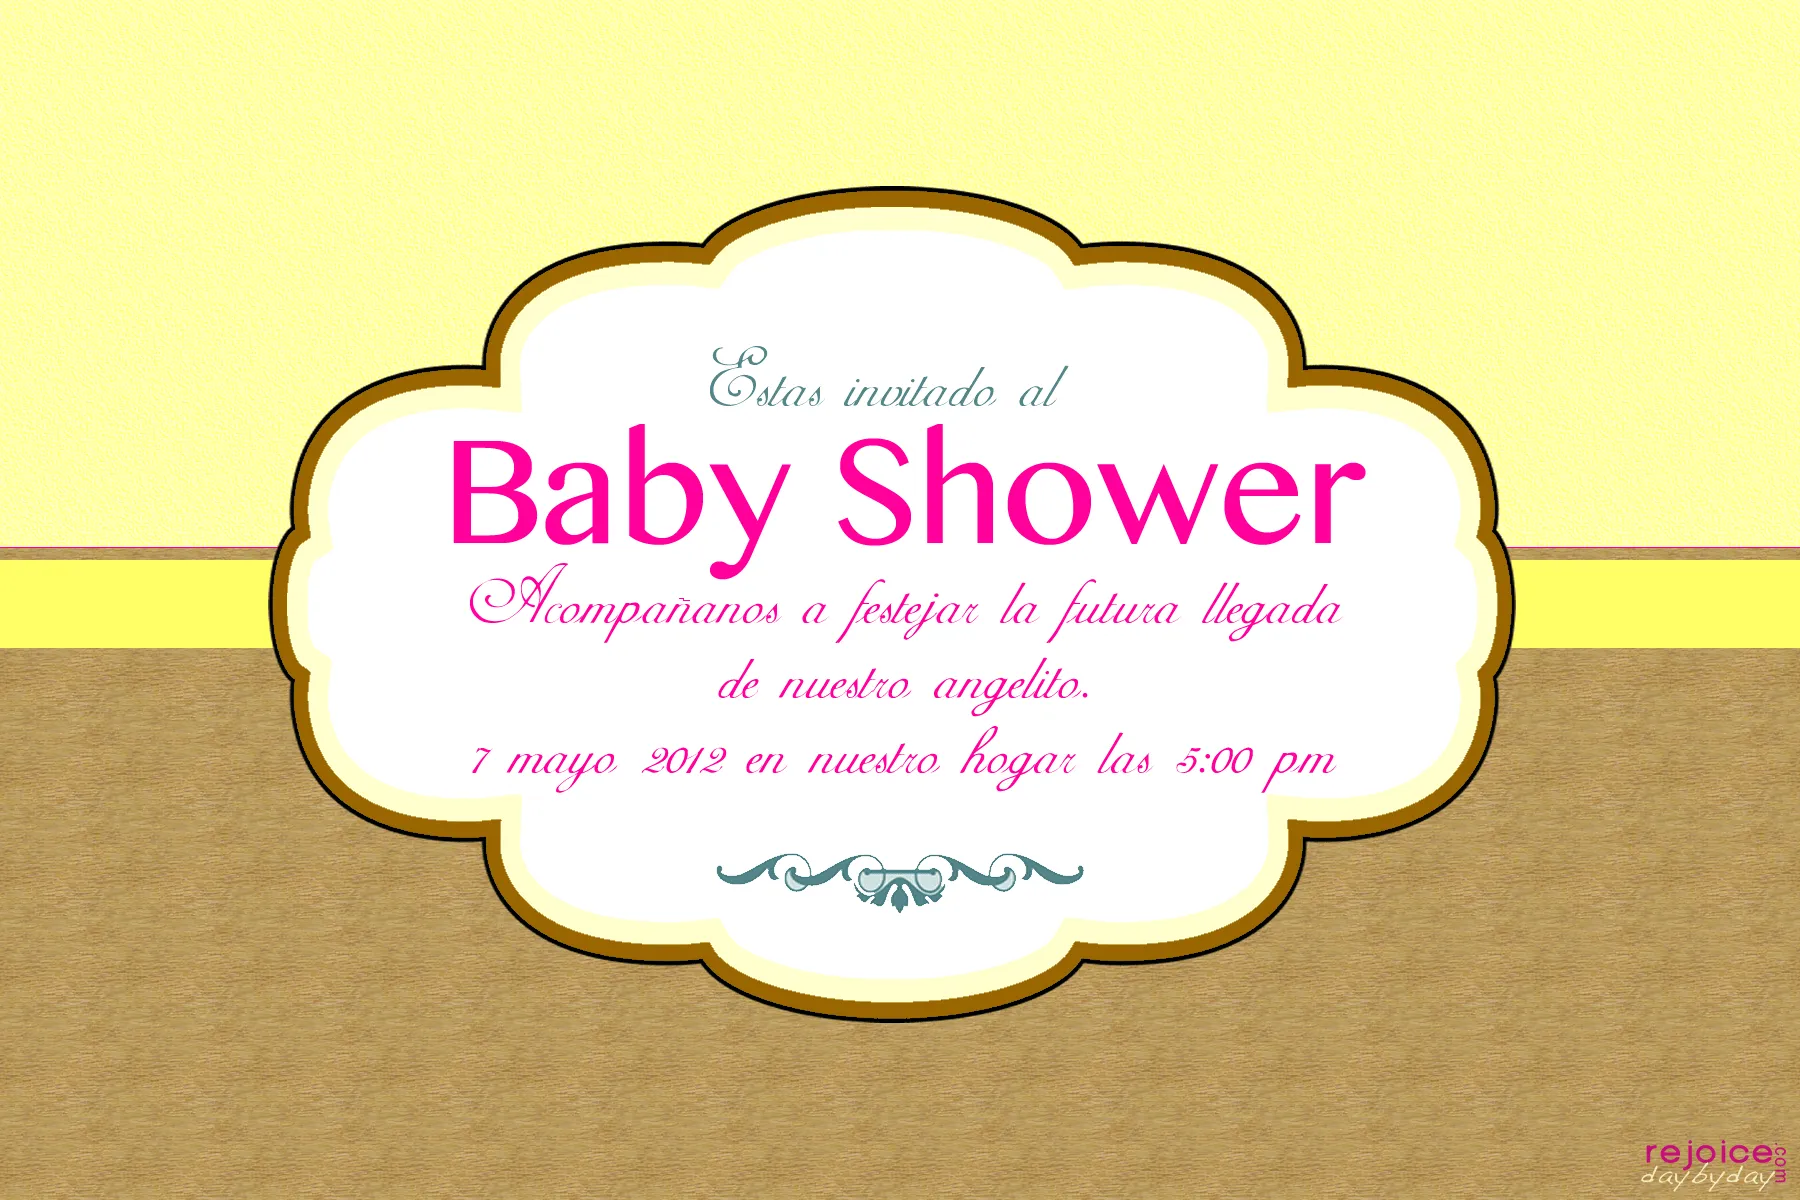 Versiculos biblicos para baby shower - Imagui